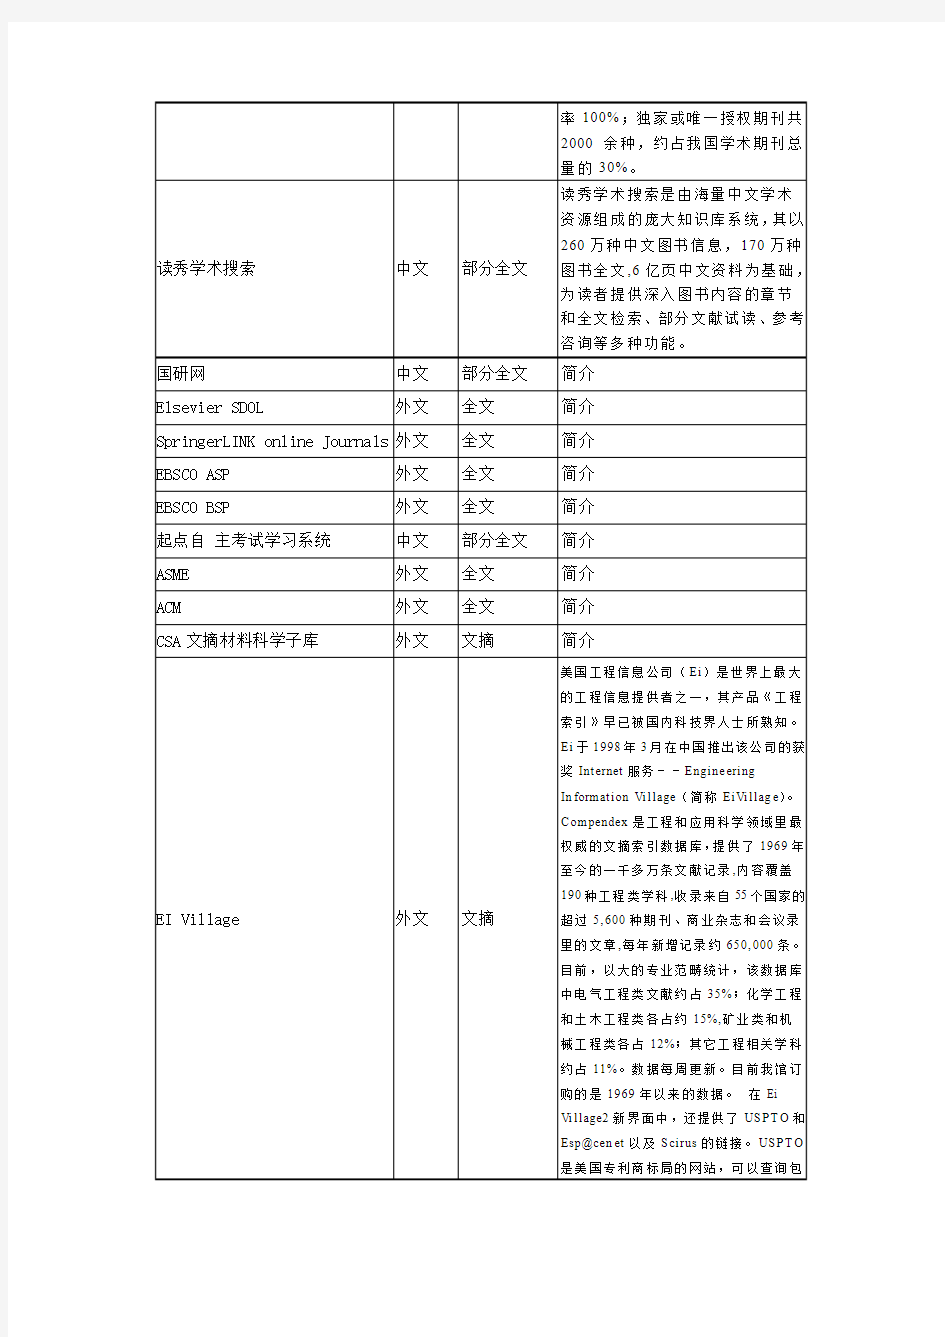 武汉科技大学图书馆购买的数据库